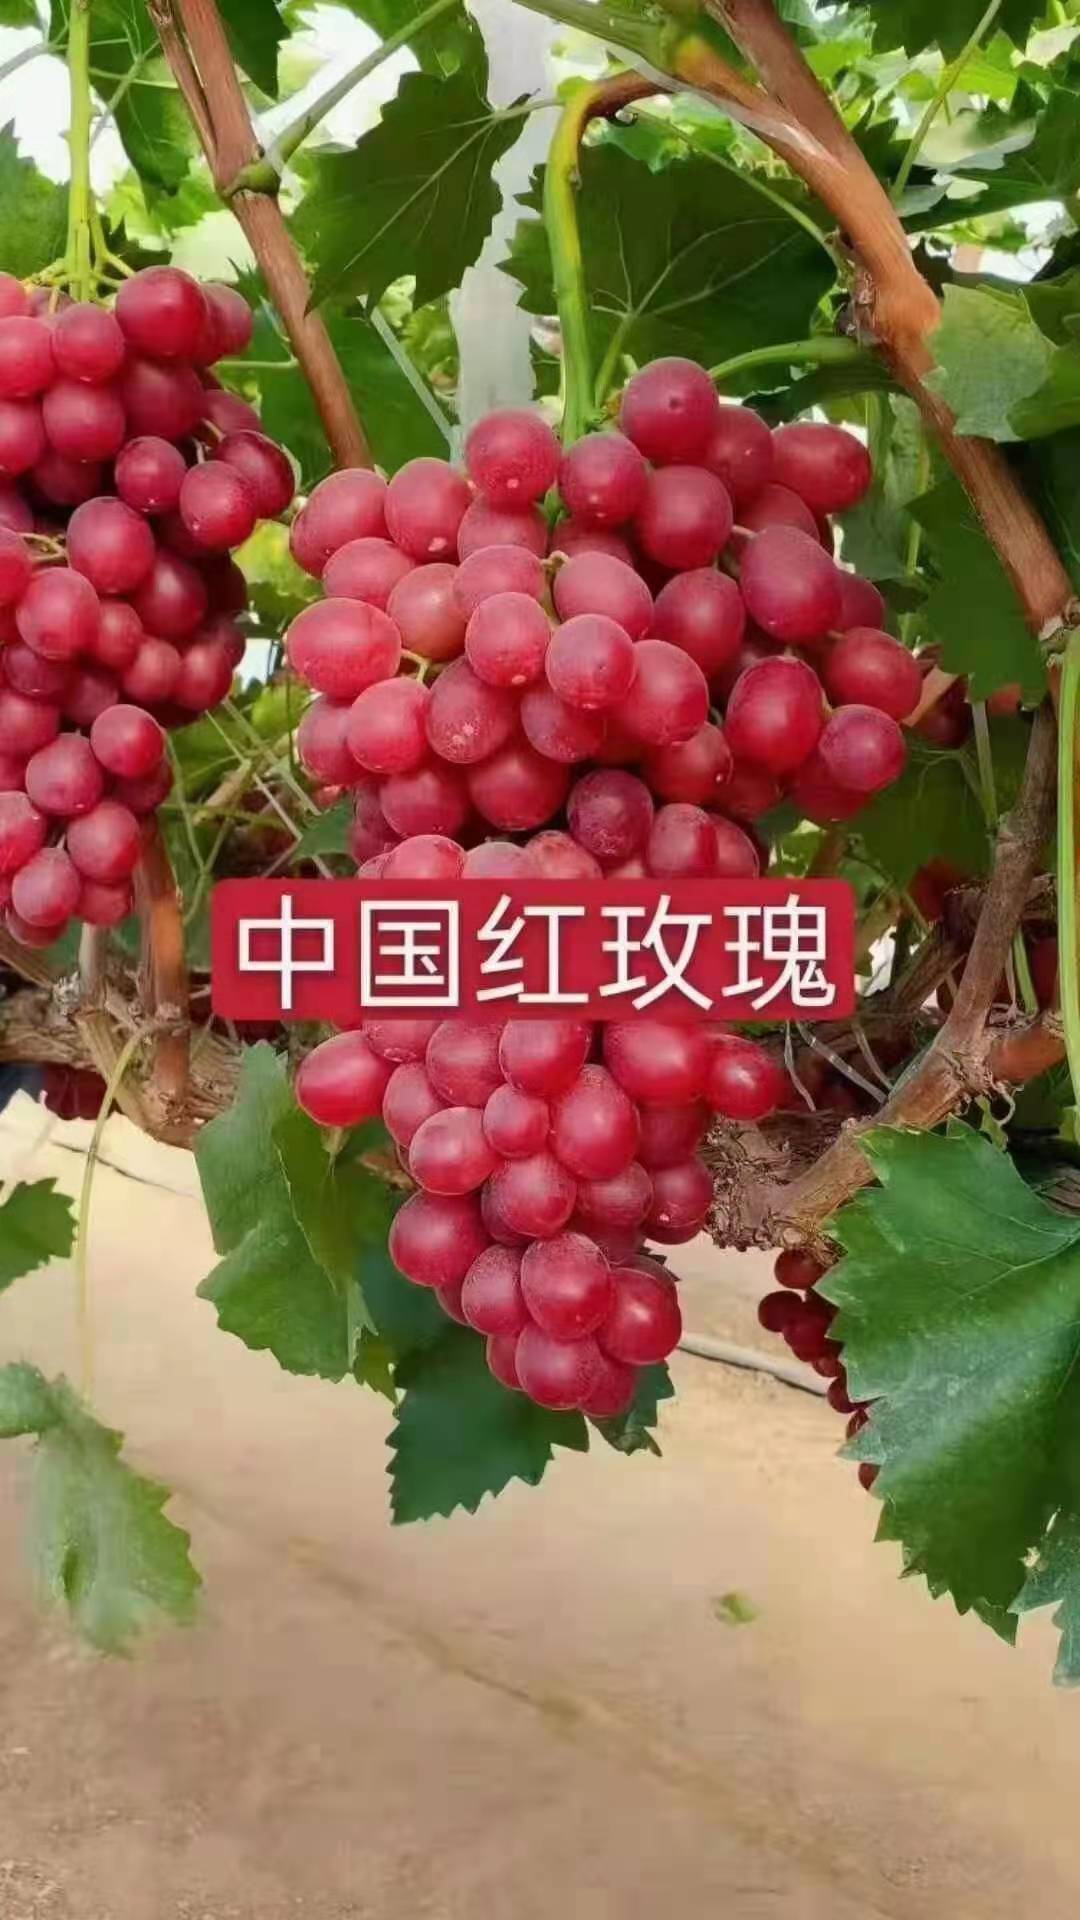 卢龙县卡式玫瑰葡萄苗 中国红玫瑰